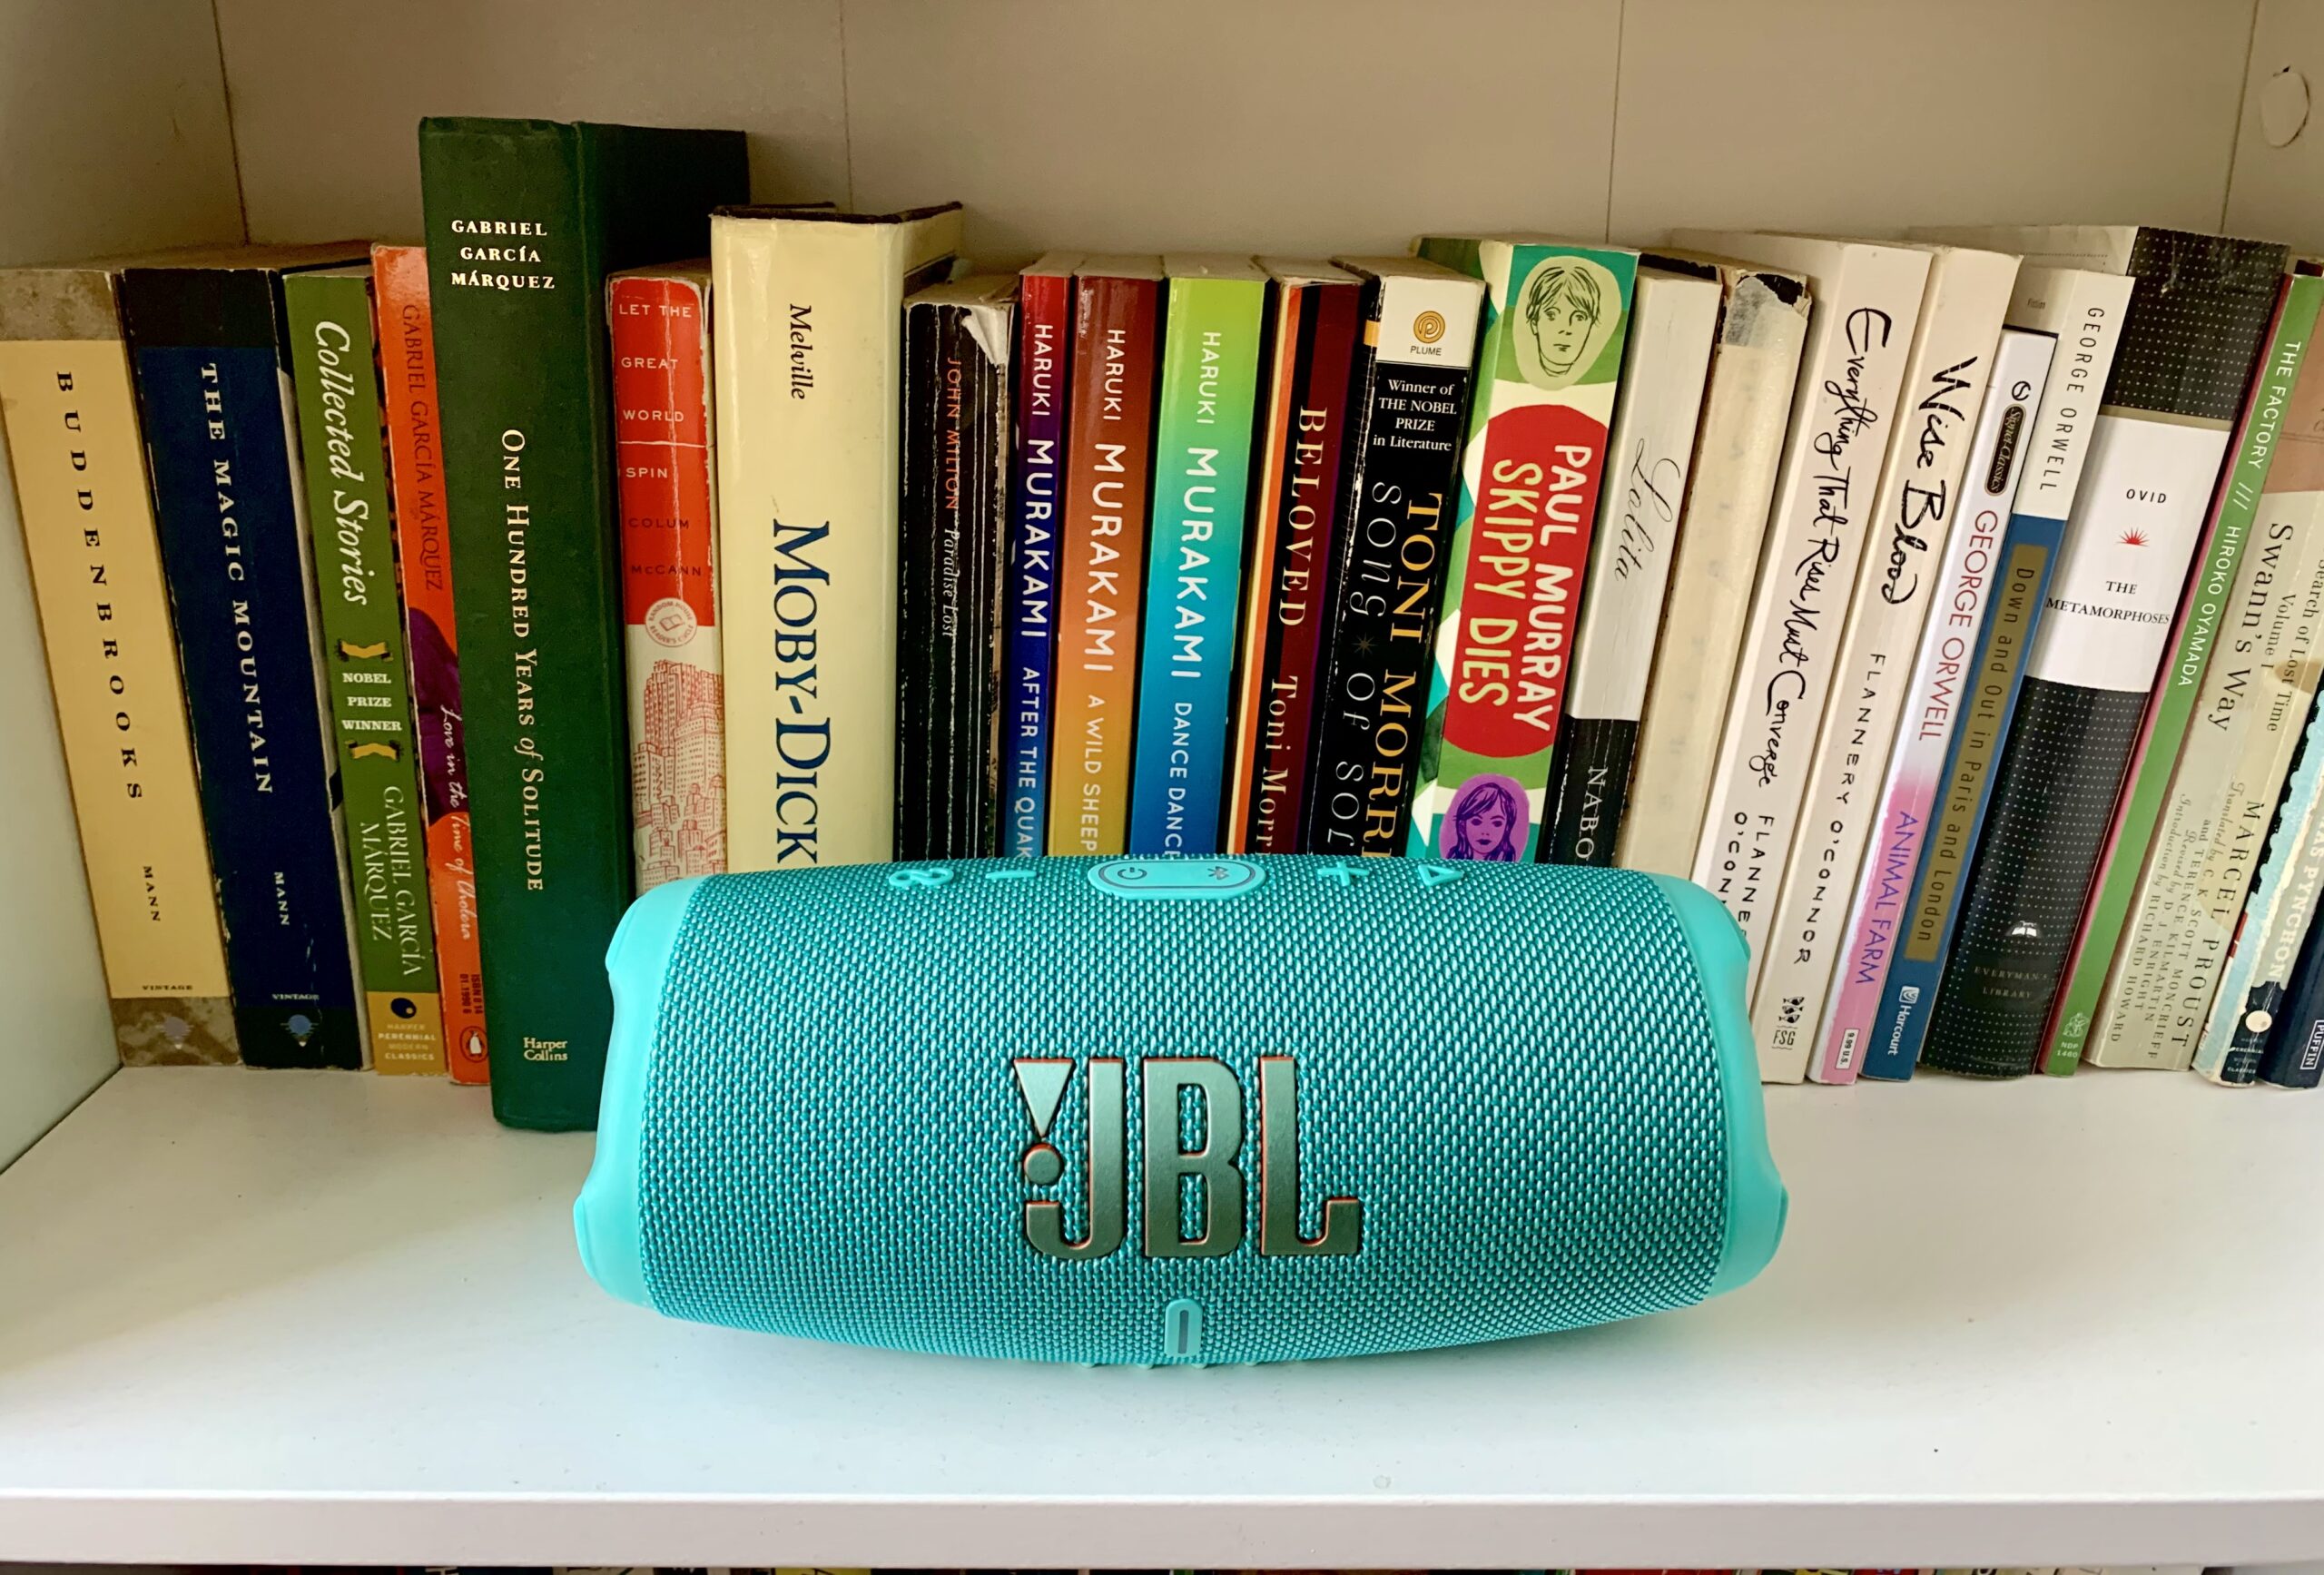 JBL Charge 5 Portable Waterproof Bluetooth Speaker with Powerbank (Blue) 